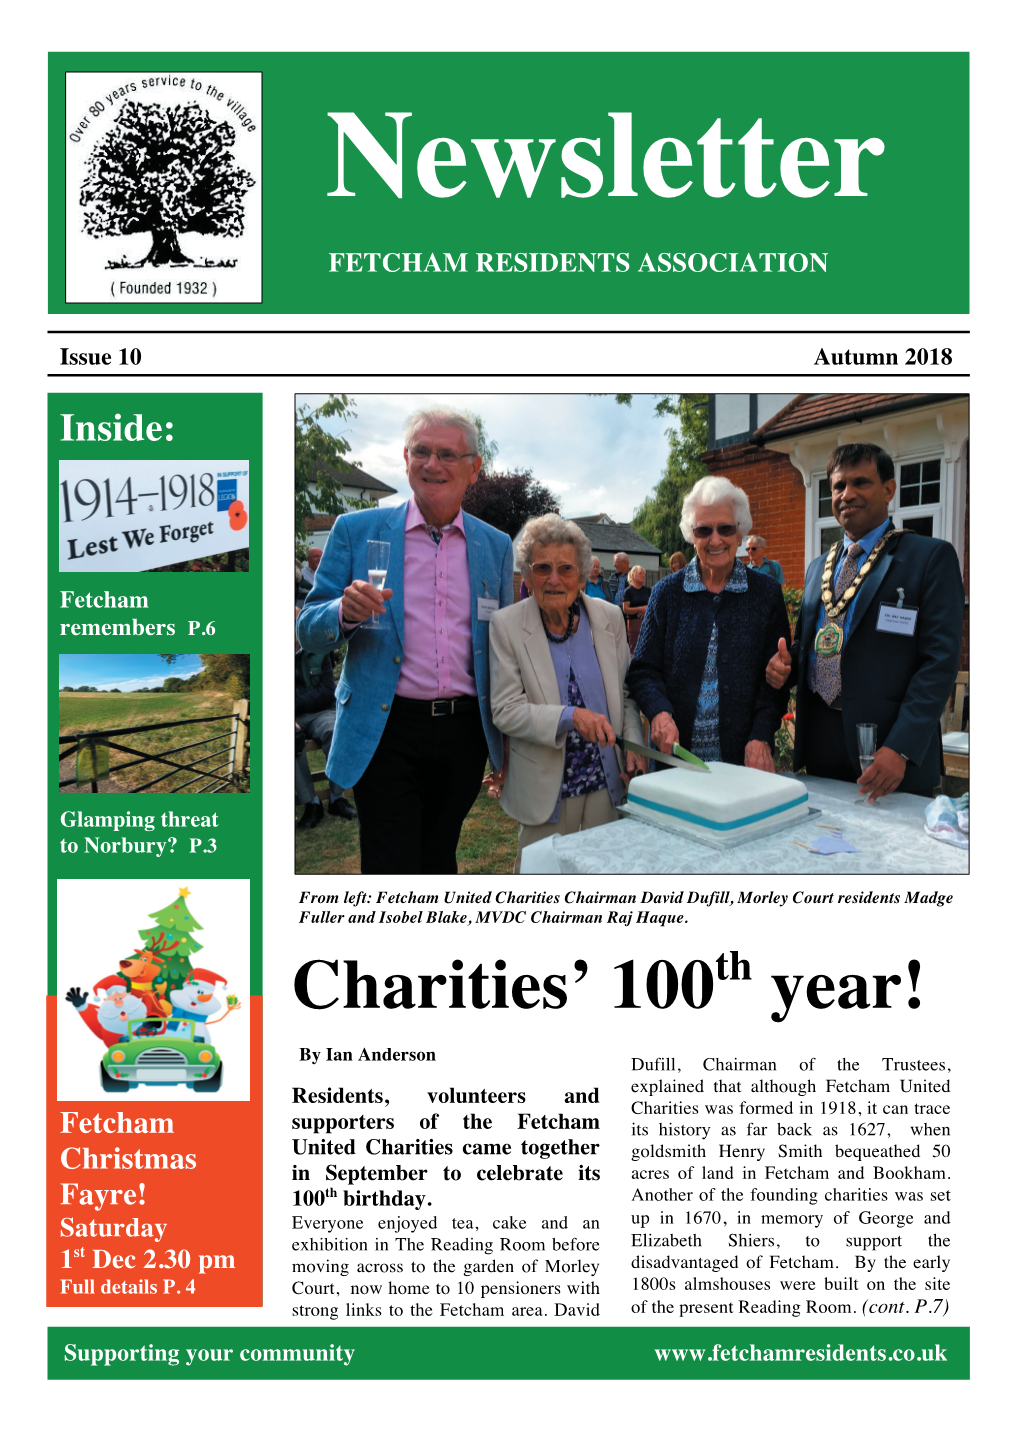 Charities' 100 Year!